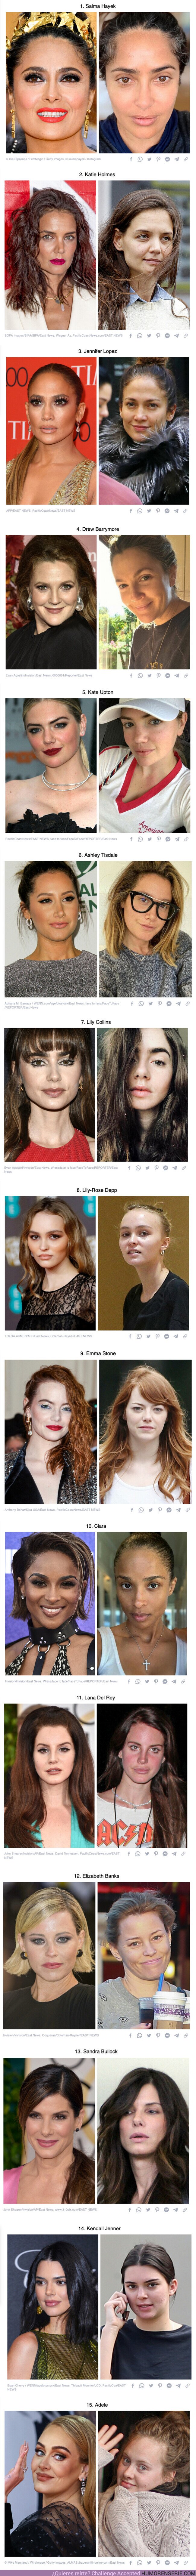 113565 - GALERÍA: 15 Fotos de famosas que demuestran que toda mujer es guapa con y sin maquillaje